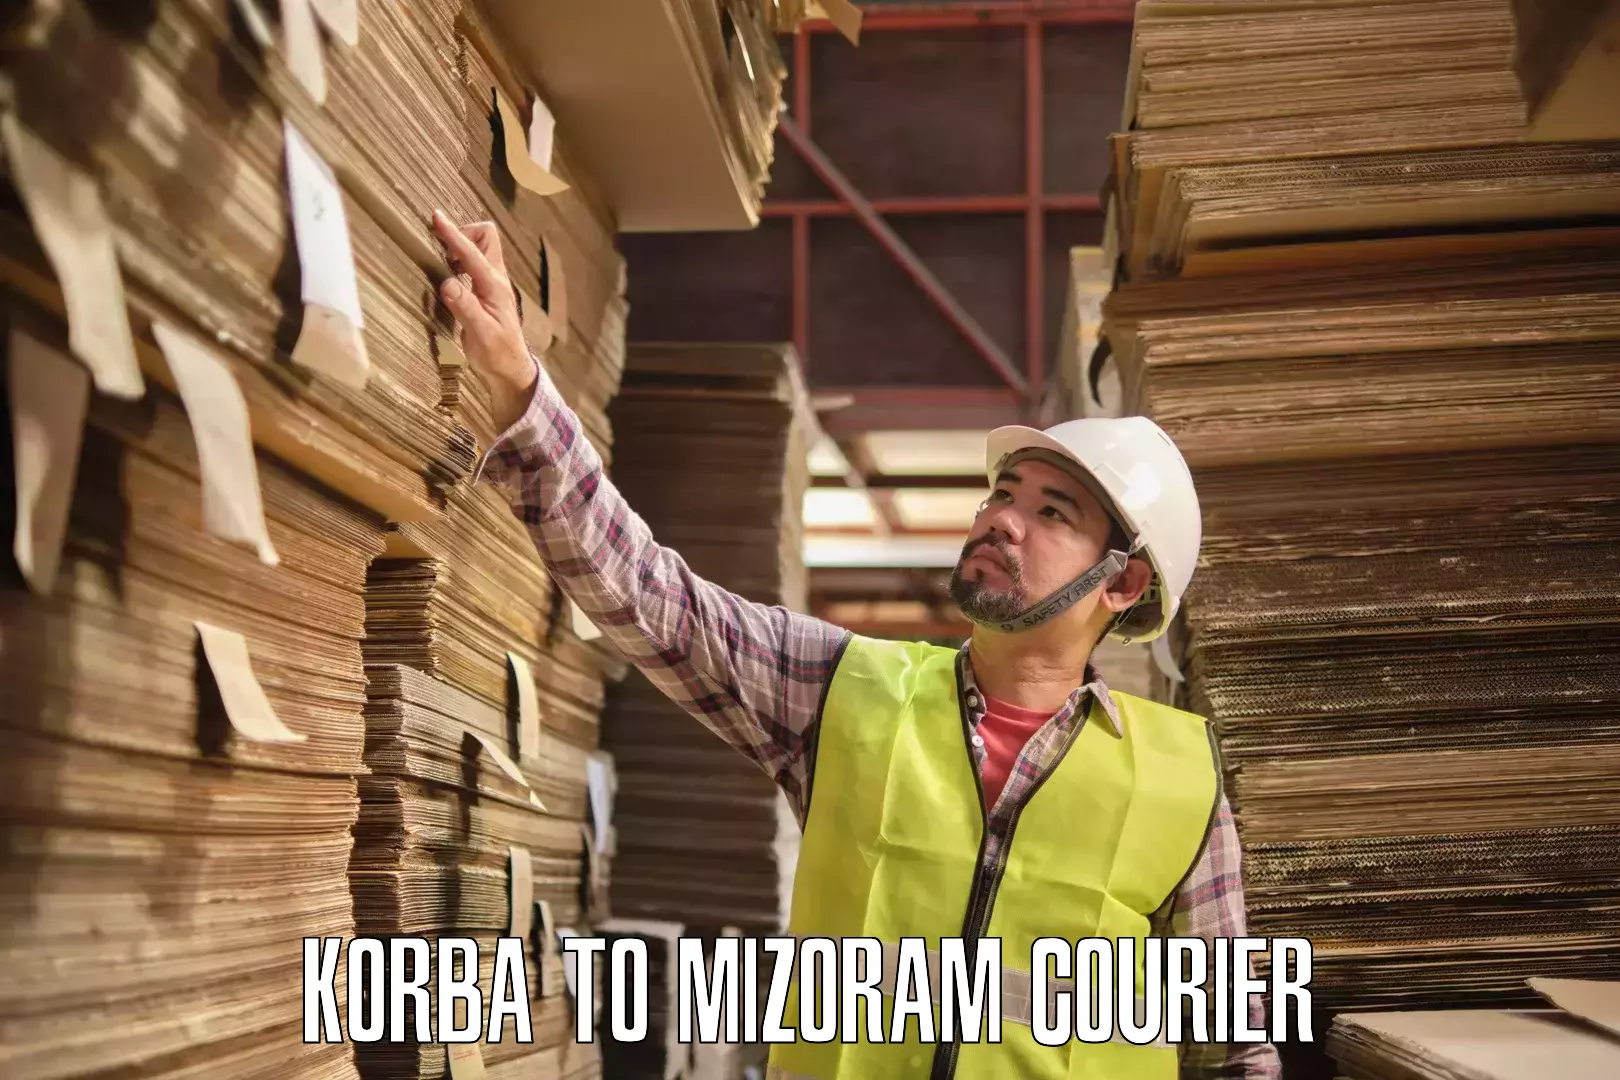 Global freight services Korba to Mizoram